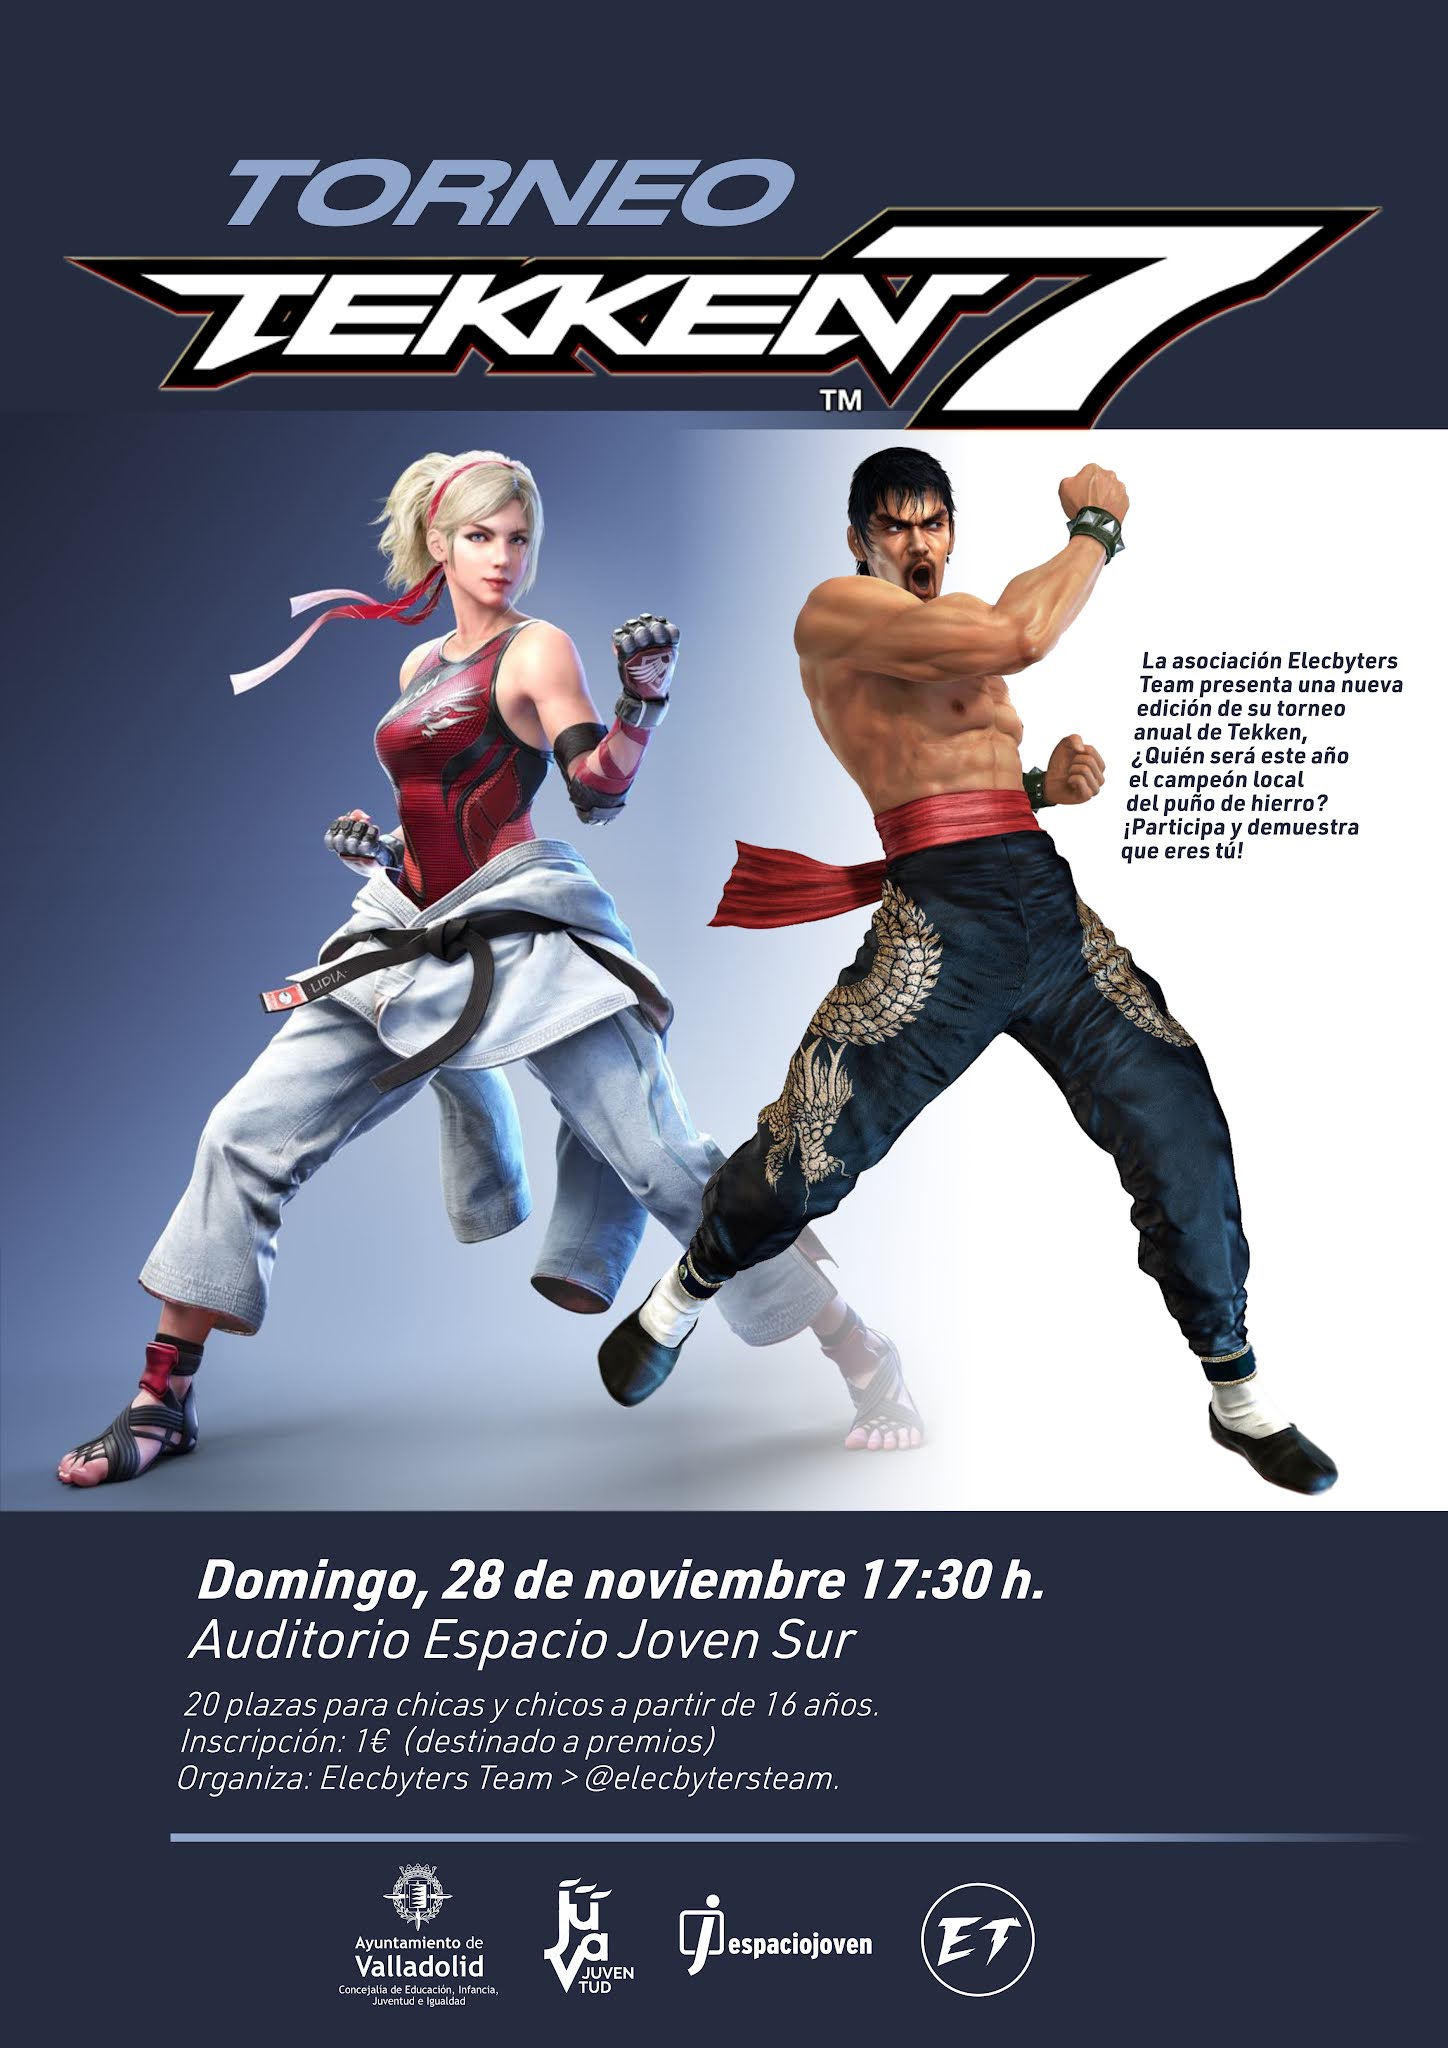 Torneo Tekken 7 organizado por Elecbyters Team. 28 de noviembre en el Espacio Joven Sur.